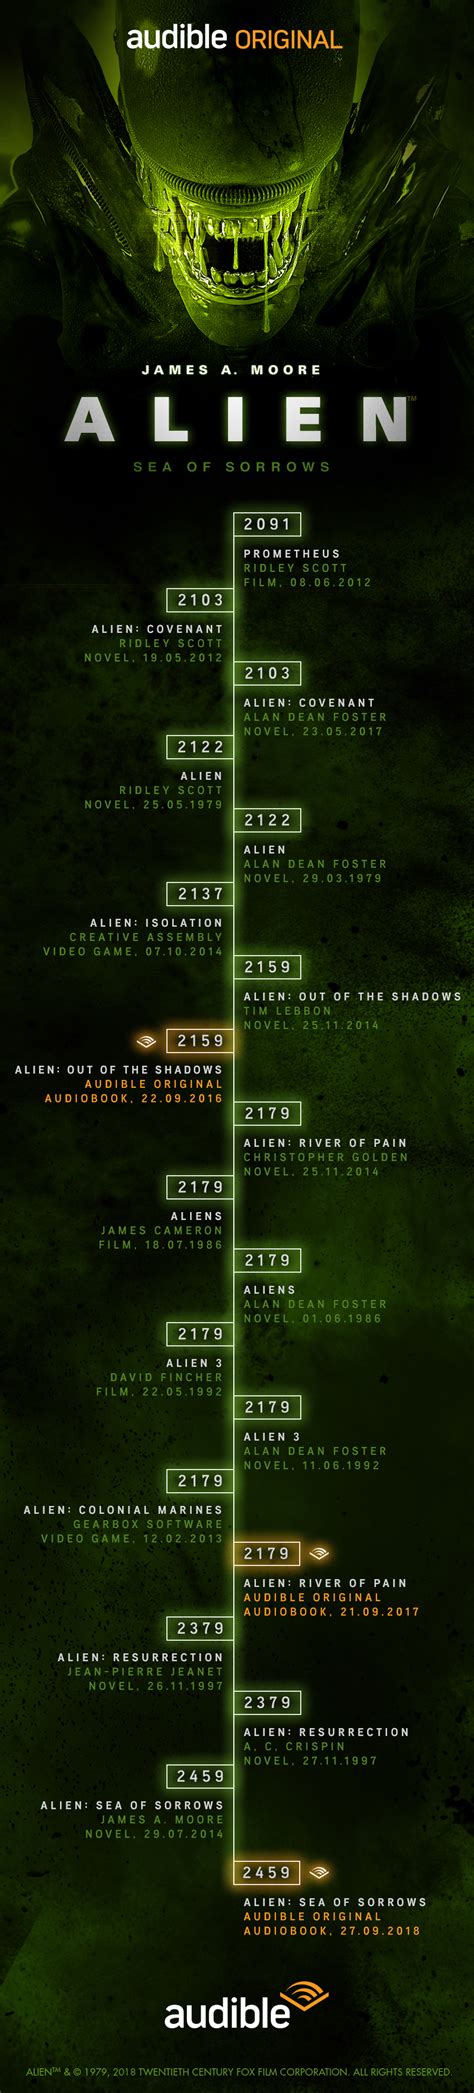 alien movies in order timeline